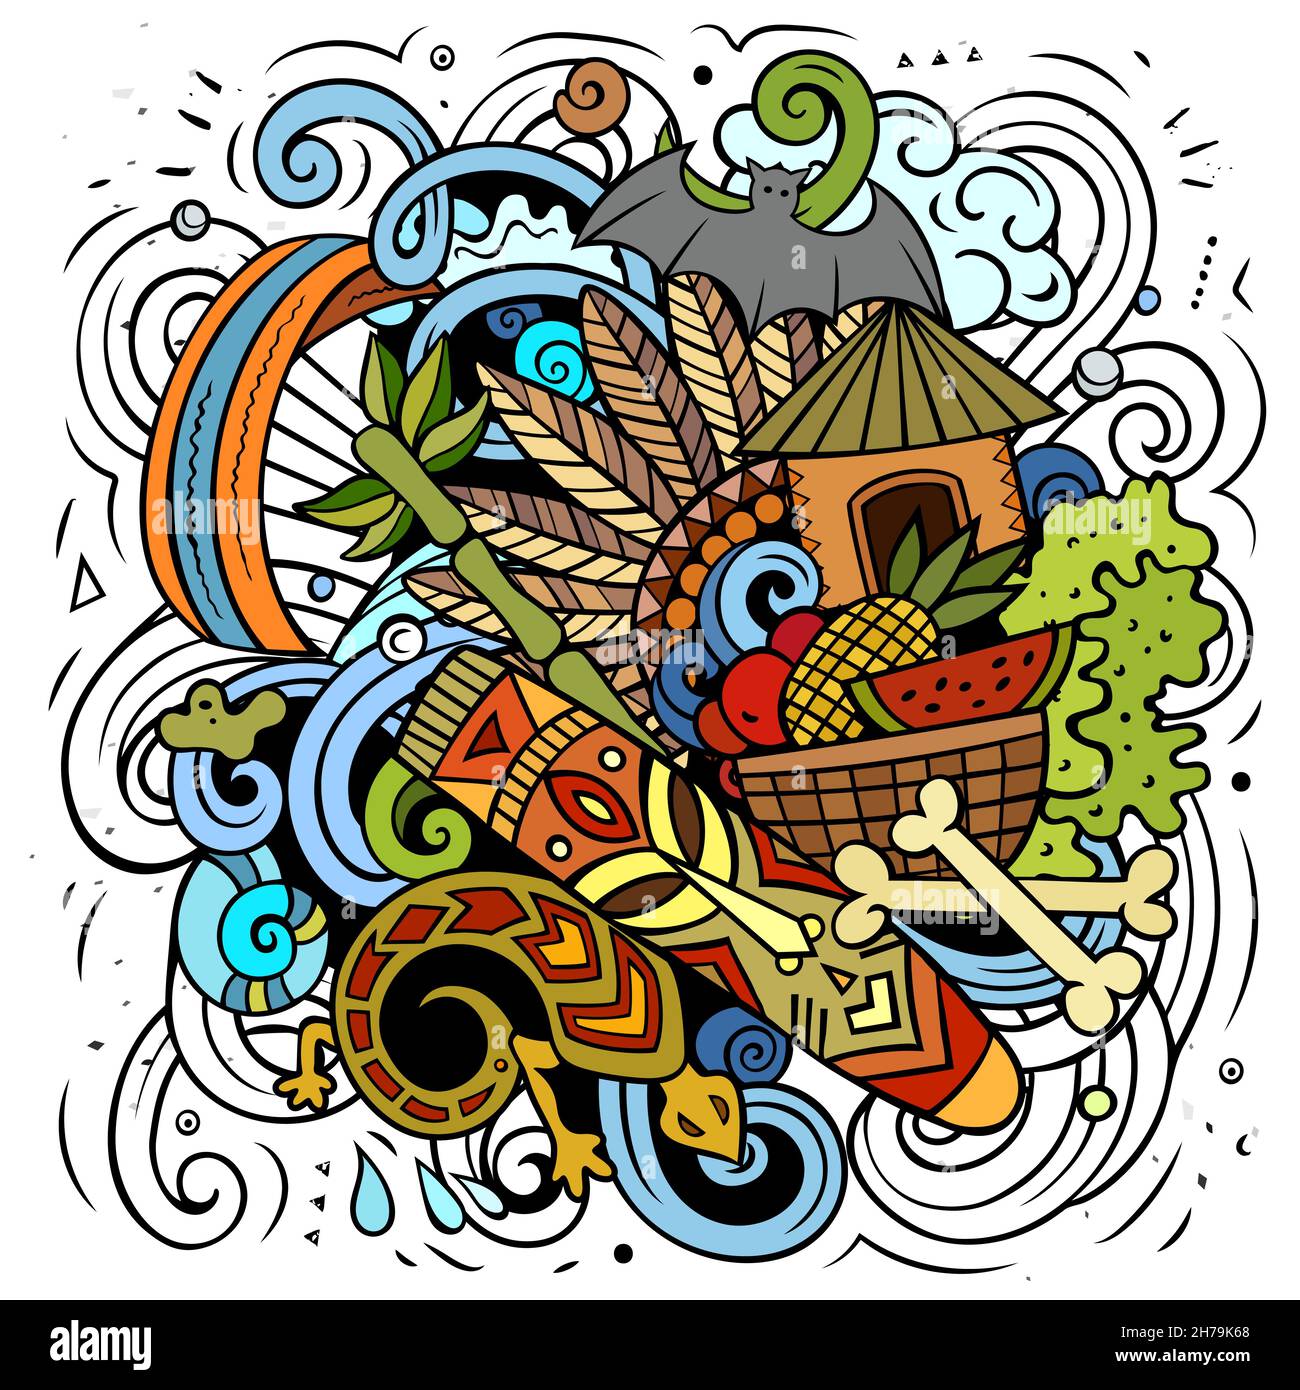 Illustrazione di fumetto vettoriale di Figi. Composizione colorata e dettagliata con molti oggetti e simboli esotici dell'isola. Illustrazione Vettoriale